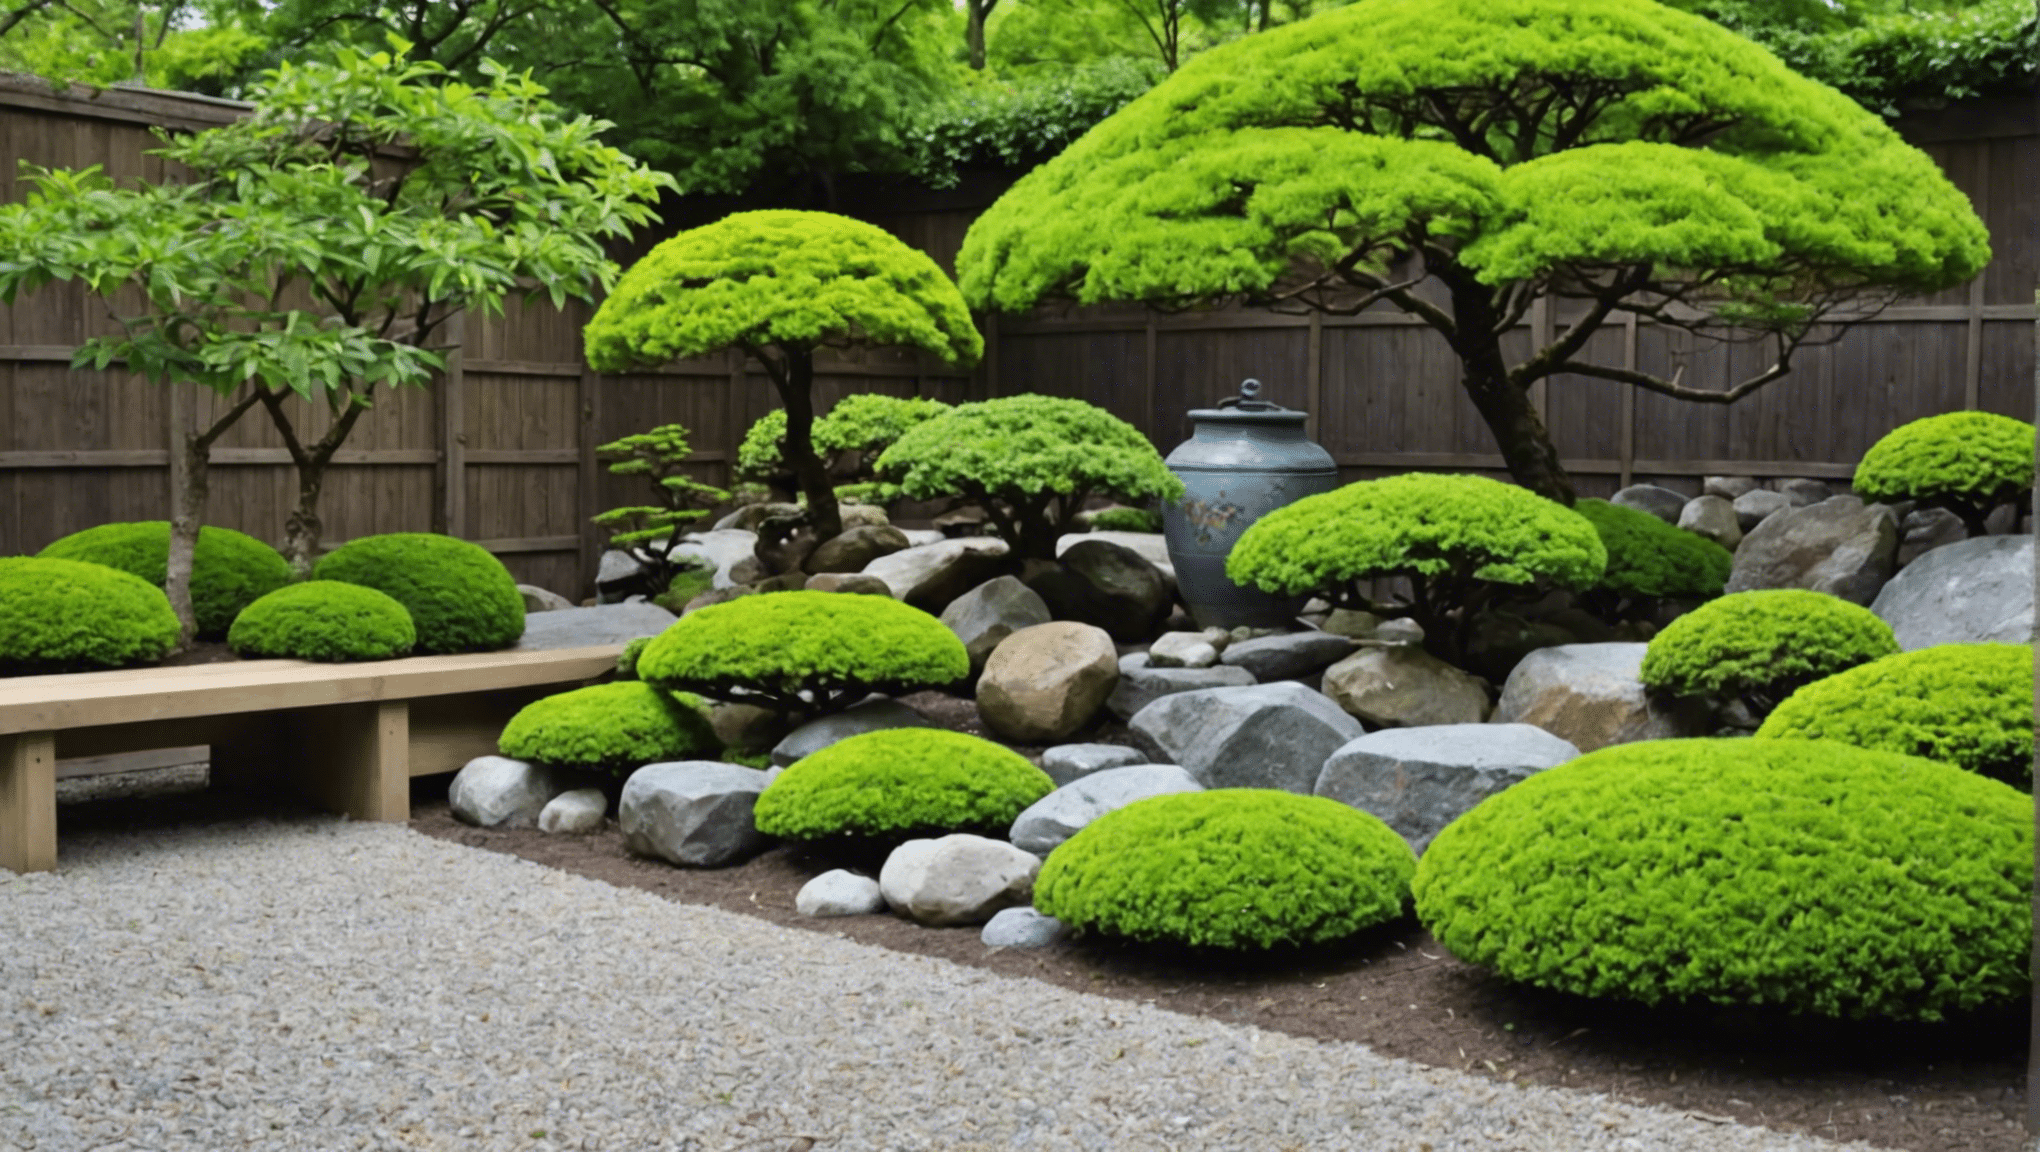 zistite, či sú japonské záhradnícke nástroje kľúčom k vytvoreniu úžasnej záhrady pomocou odborných poznatkov a rád.